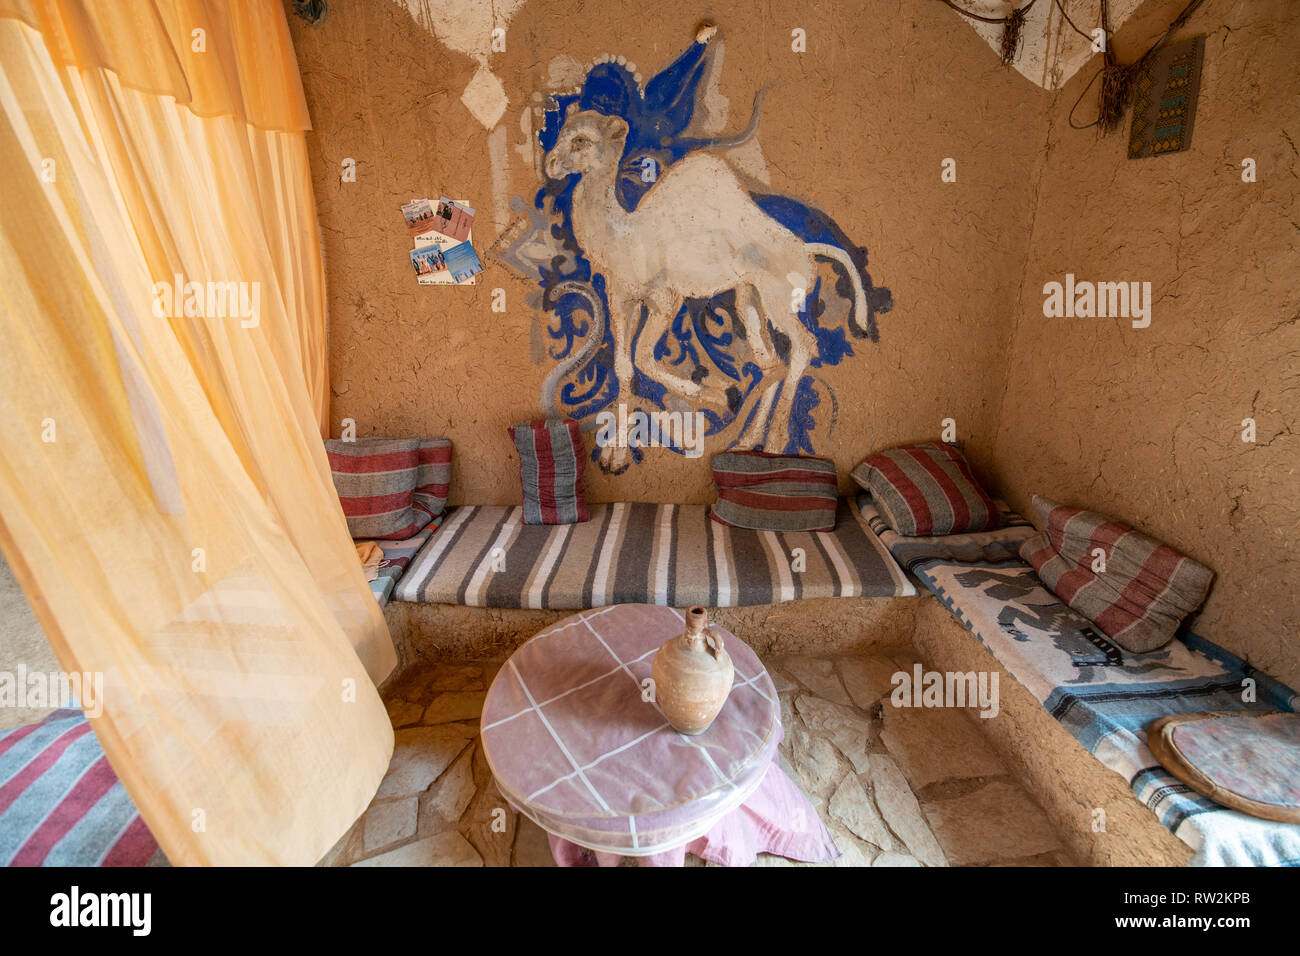 Innenbereich Wohnbereich mit Kamel Darstellung auf Wand der traditionellen Schlamm gezogen - Backstein Haus, Tighmert Oase, Marokko Stockfoto